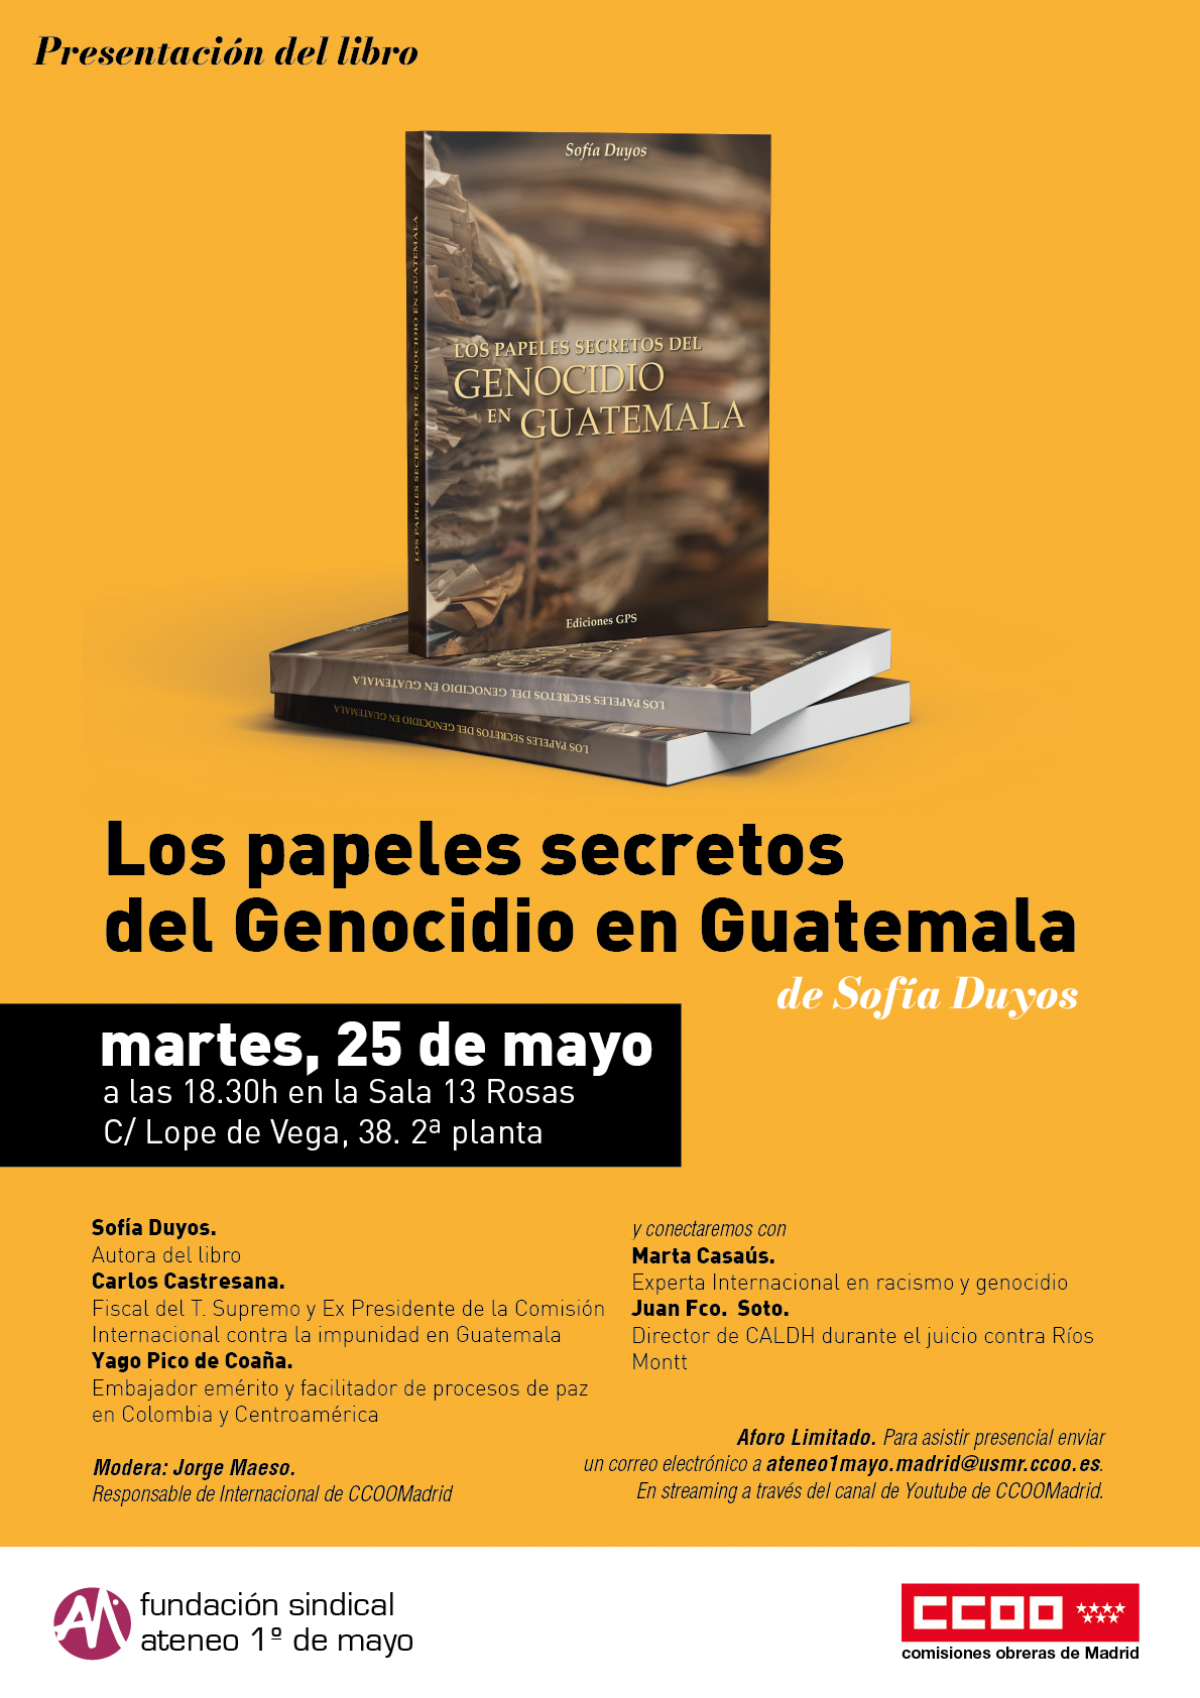 Los papeles secretos del Genocidio de Guatemala